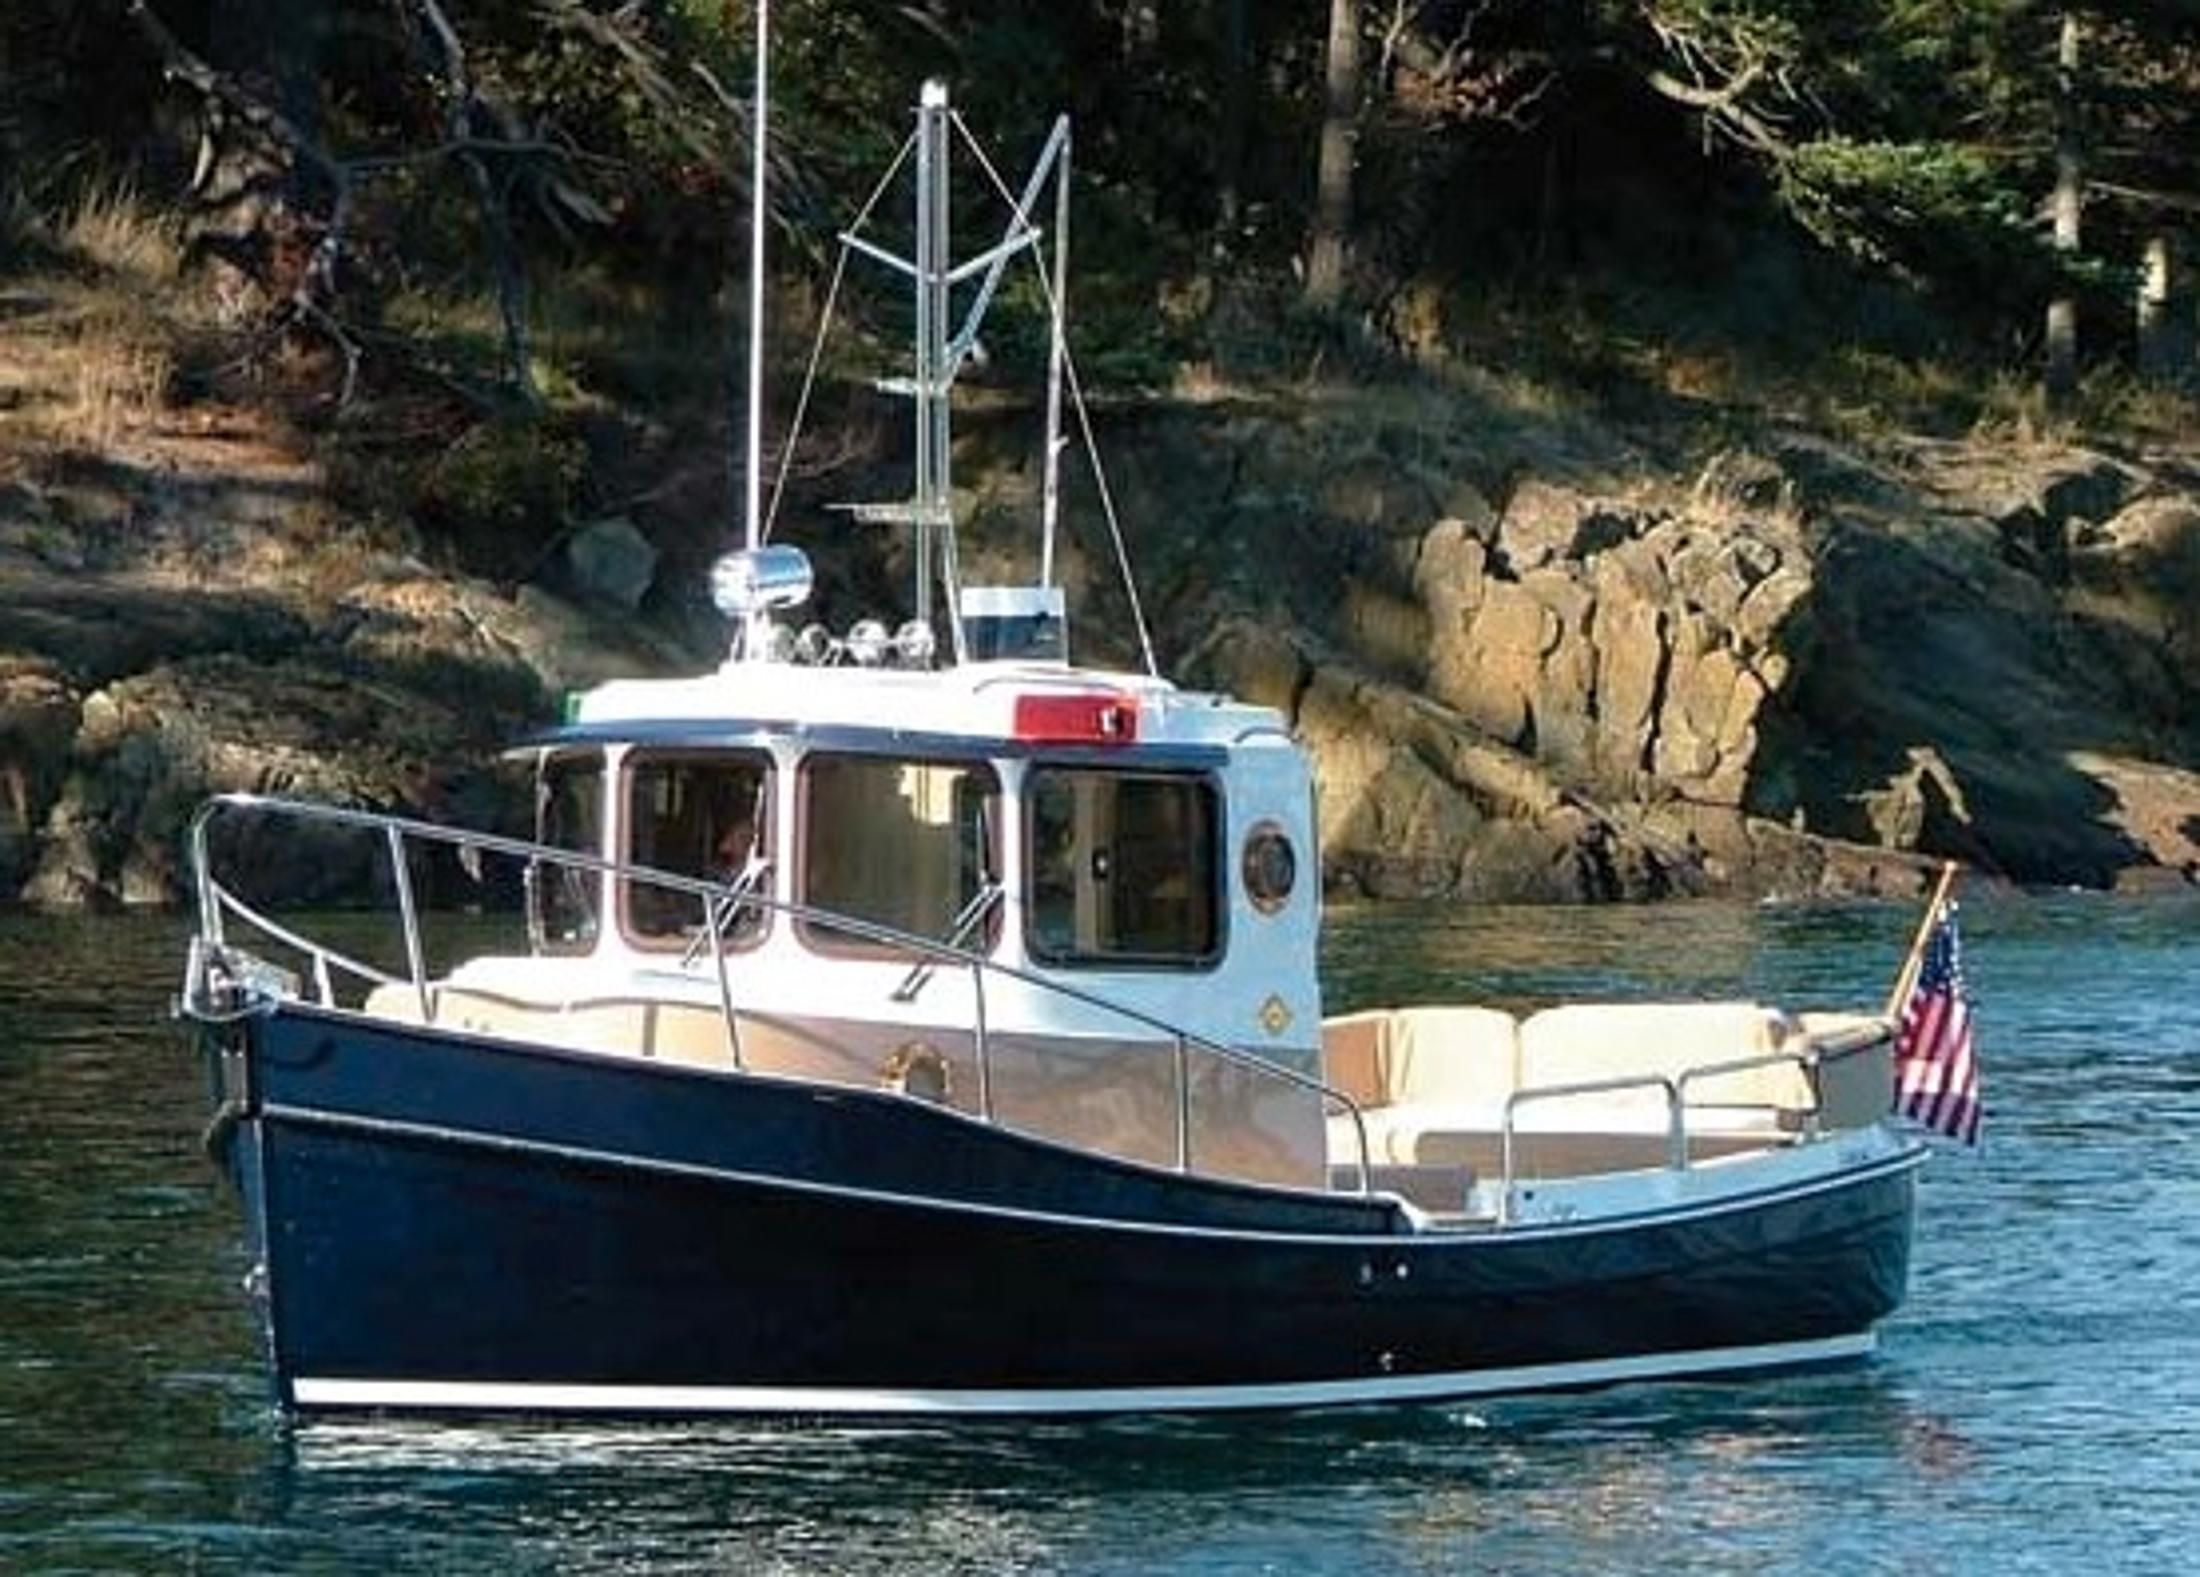 2014 ranger tugs r21-ec power boat for sale - www